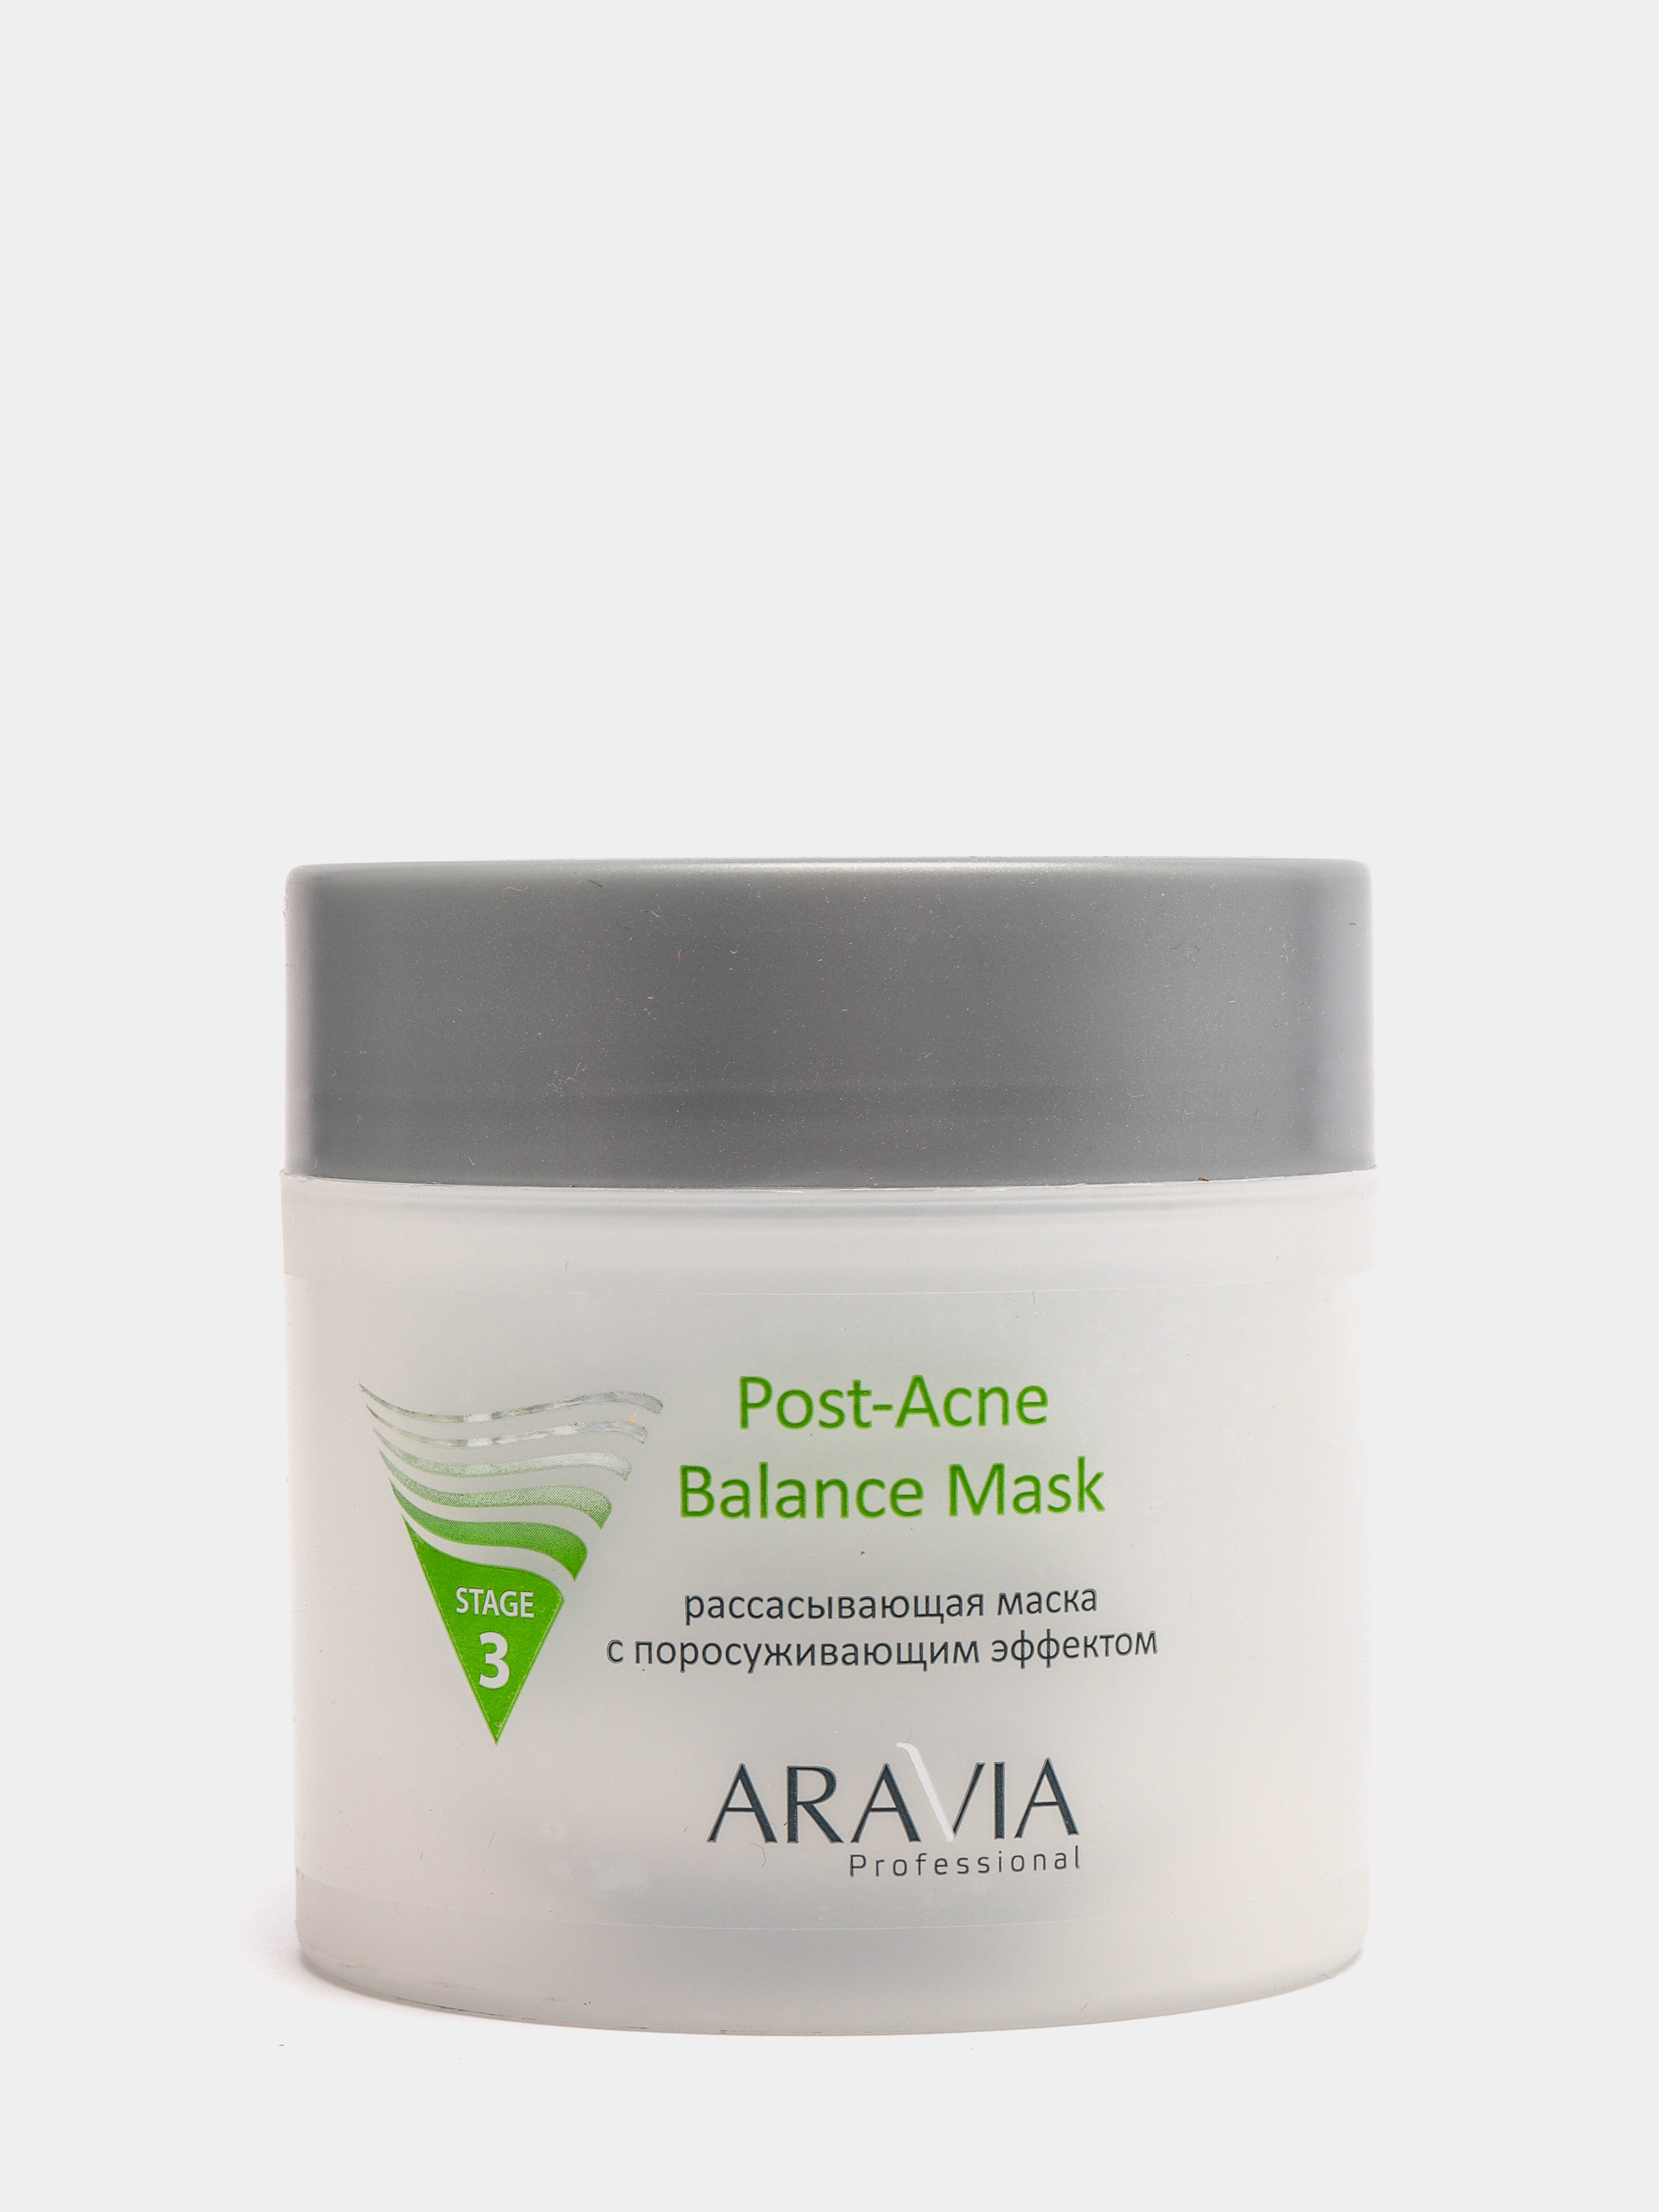 Aravia Post acne Balance Mask. Аравия рассасывающая маска с поросуживающим эффектом. Post acne маска. Маска для лица с ментолом Аравия. Рассасывающая маска с поросуживающим эффектом